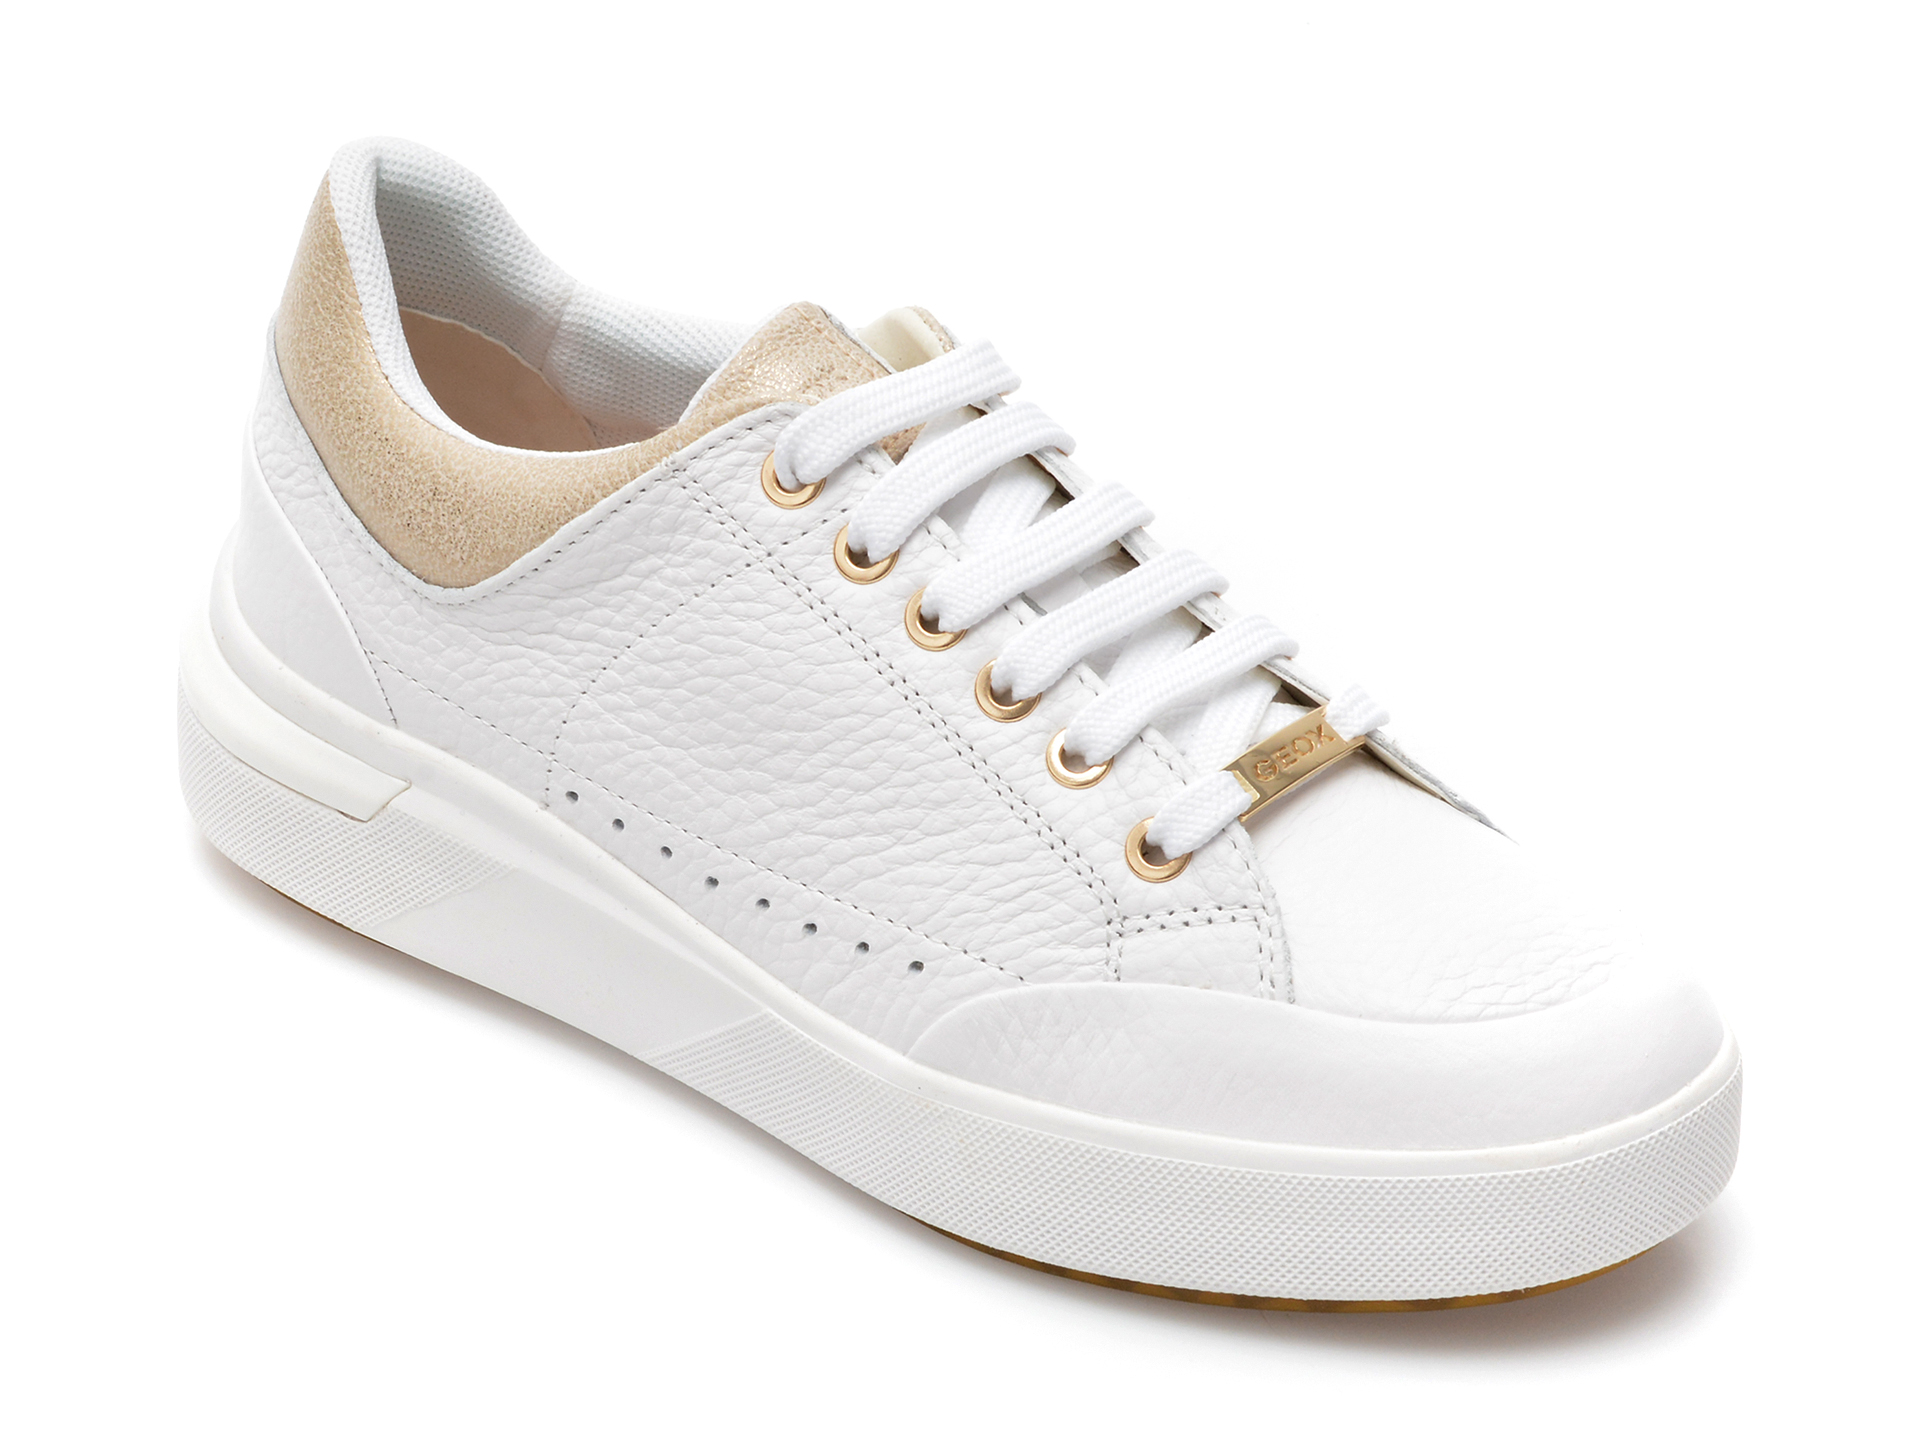 Pantofi sport GEOX albi, D25QFA, din piele naturala femei 2023-03-19